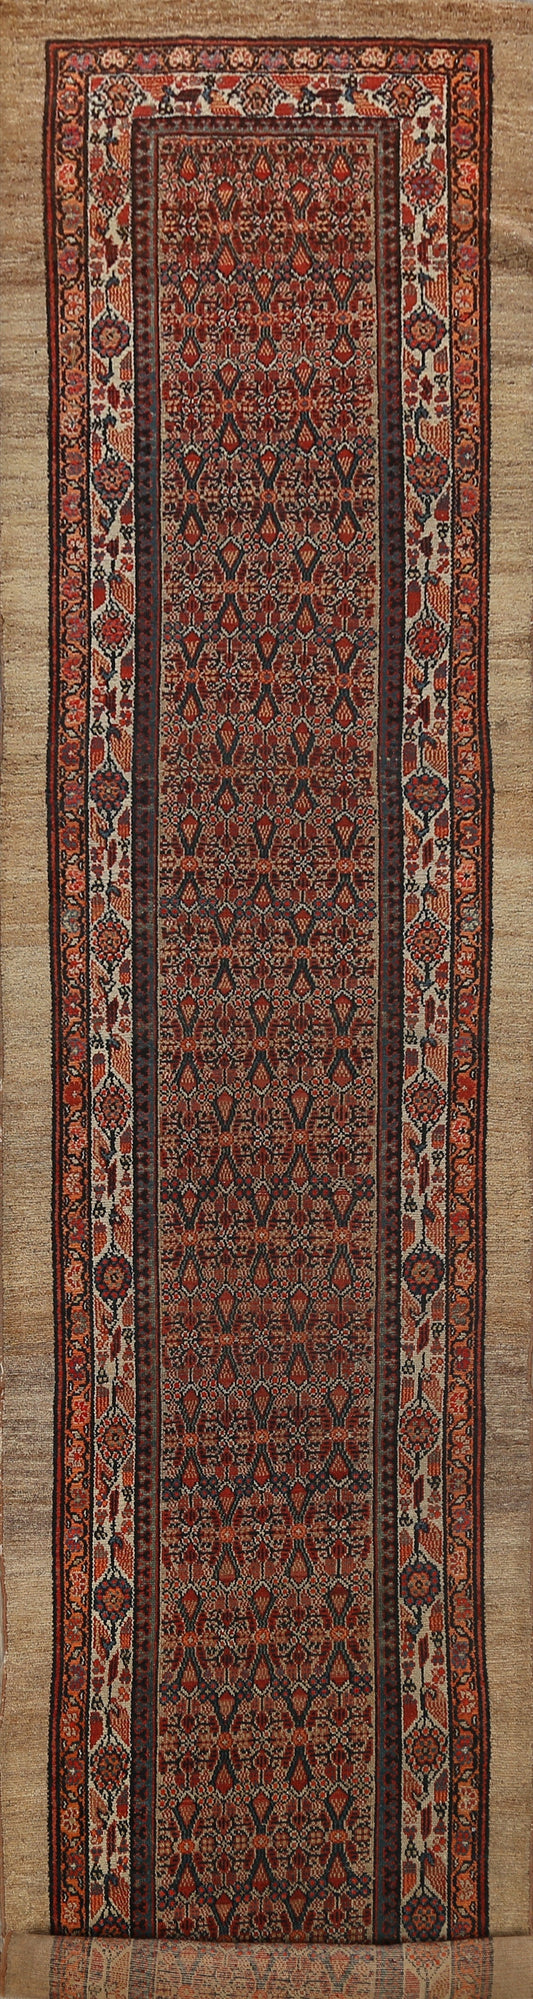 Pre-1900 Serab Vegetable Dye Persian Runner Rug 3x16